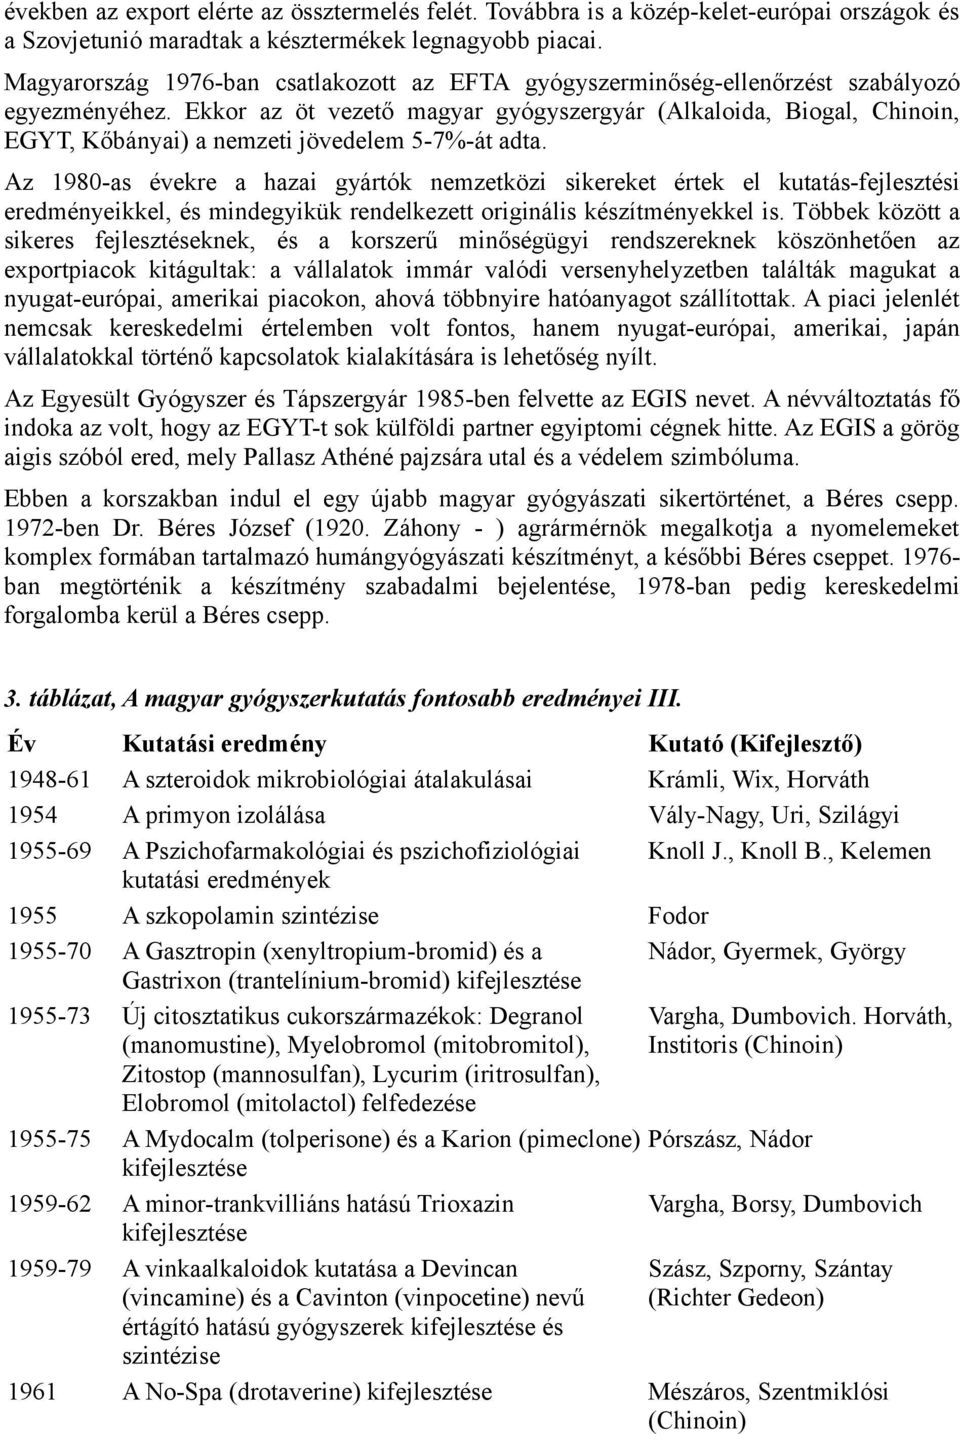 Ekkor az öt vezető magyar gyógyszergyár (Alkaloida, Biogal, Chinoin, EGYT, Kőbányai) a nemzeti jövedelem 5-7%-át adta.